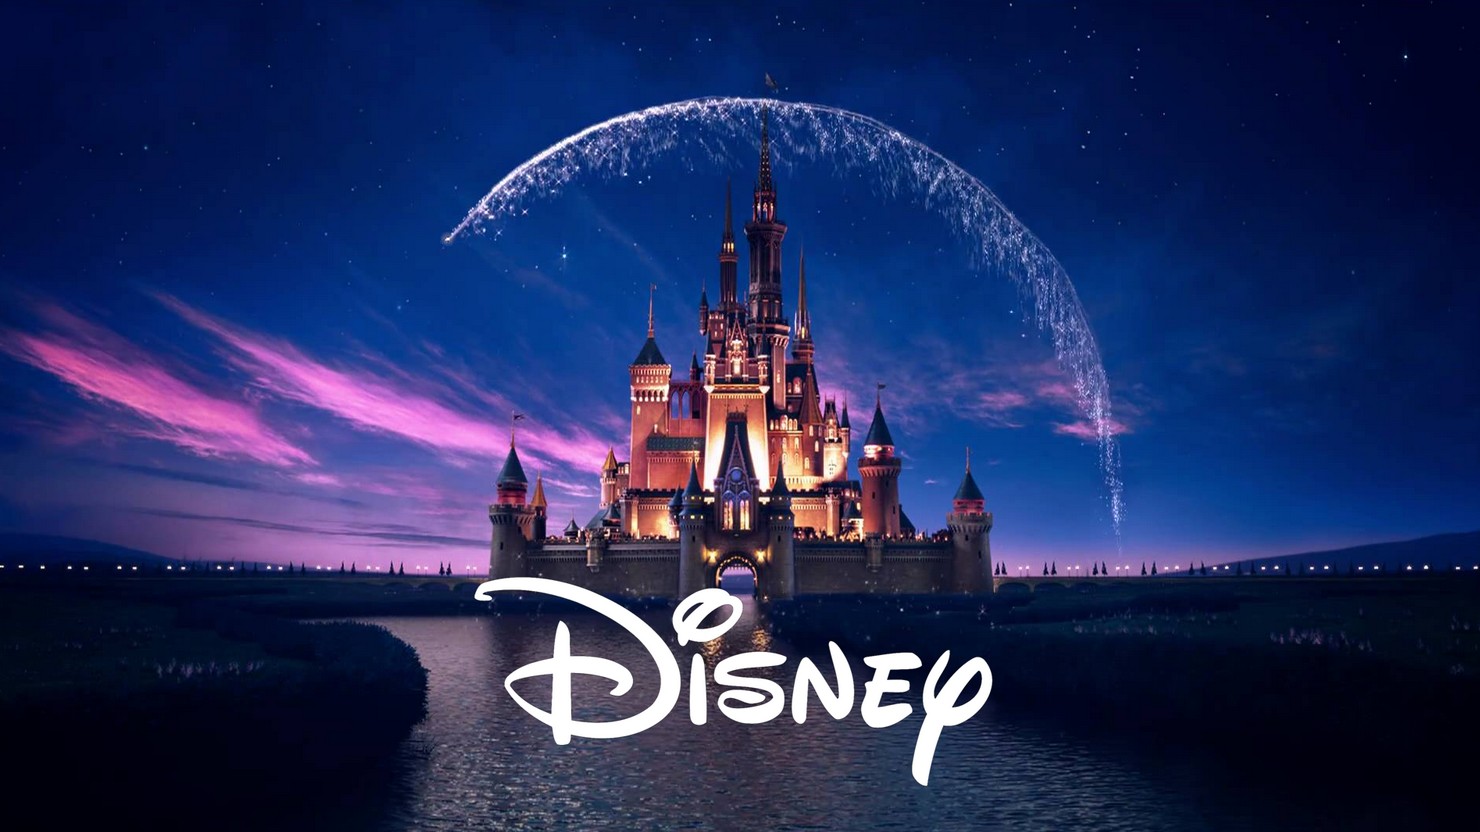 Кина не будет: Disney закрывает офис прокатного подразделения в России